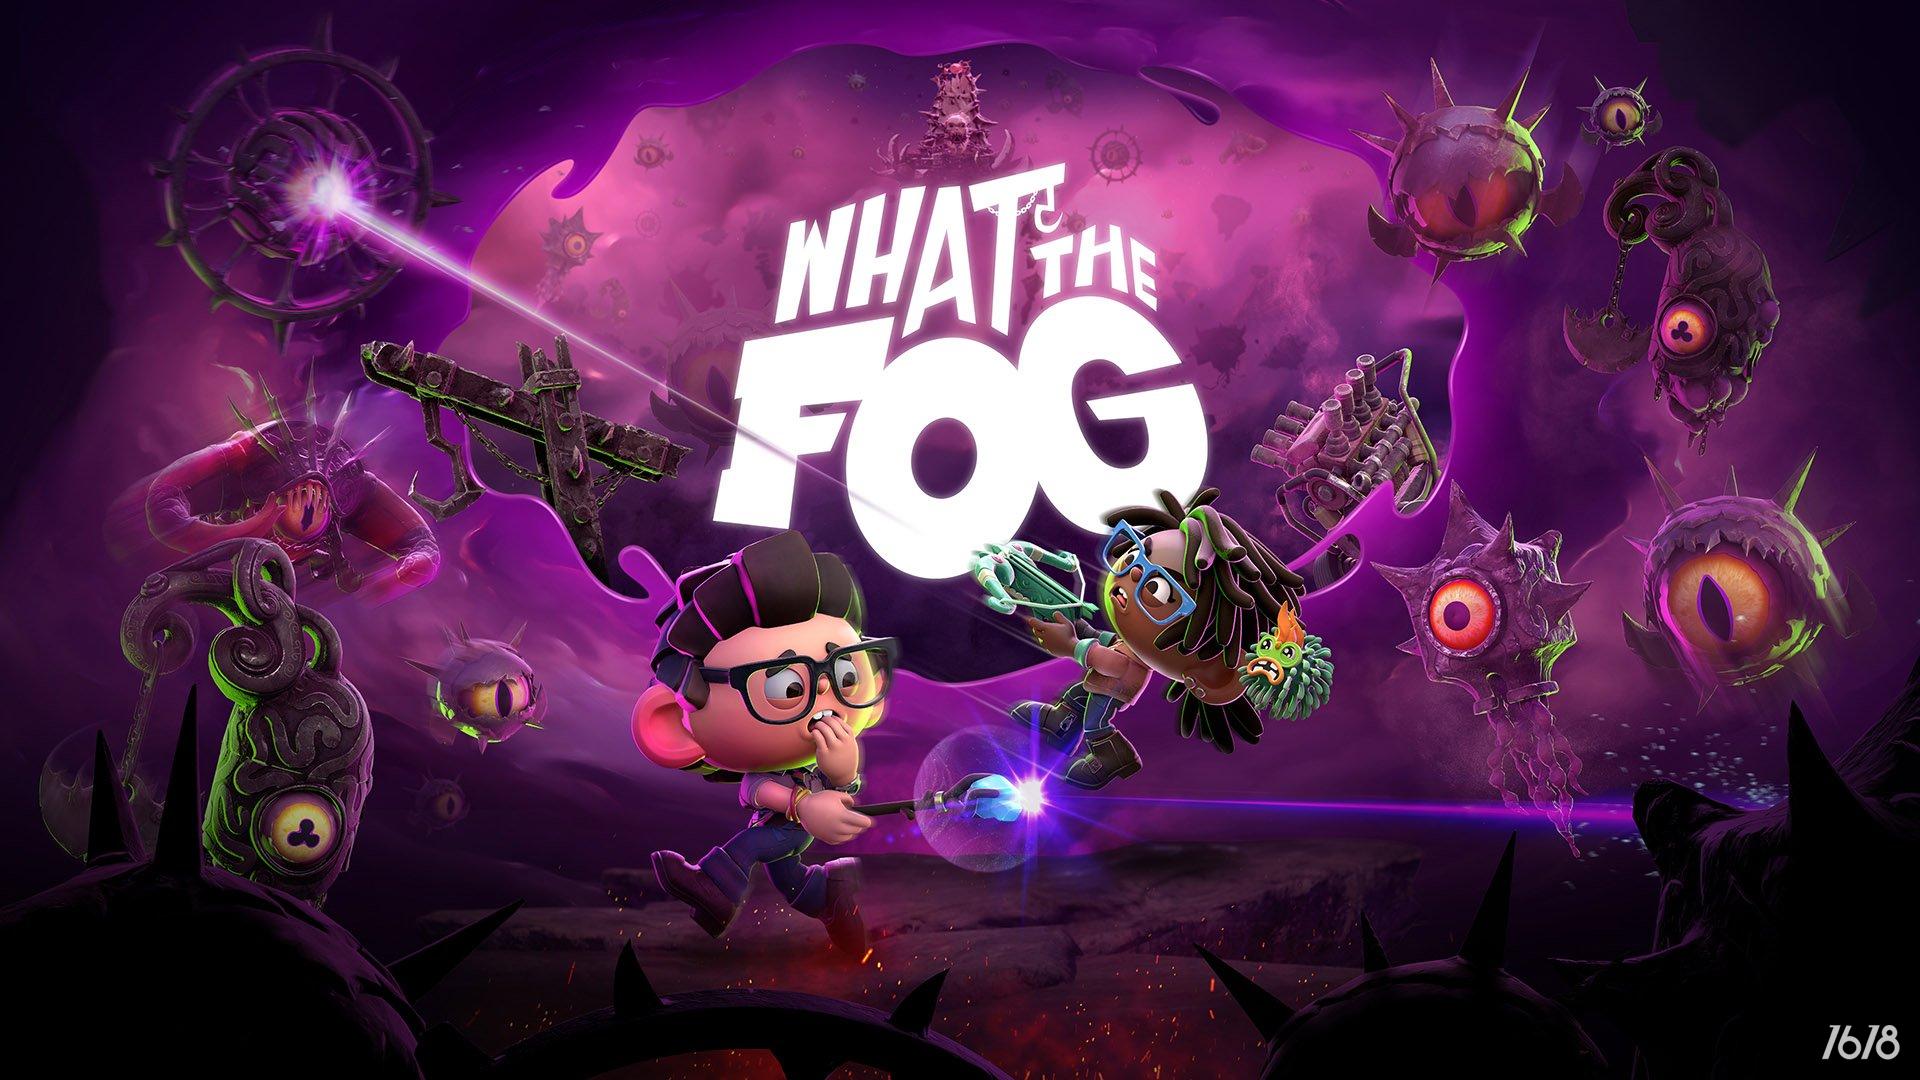 《黎明杀机》开发商推出衍生游戏《What the Fog》